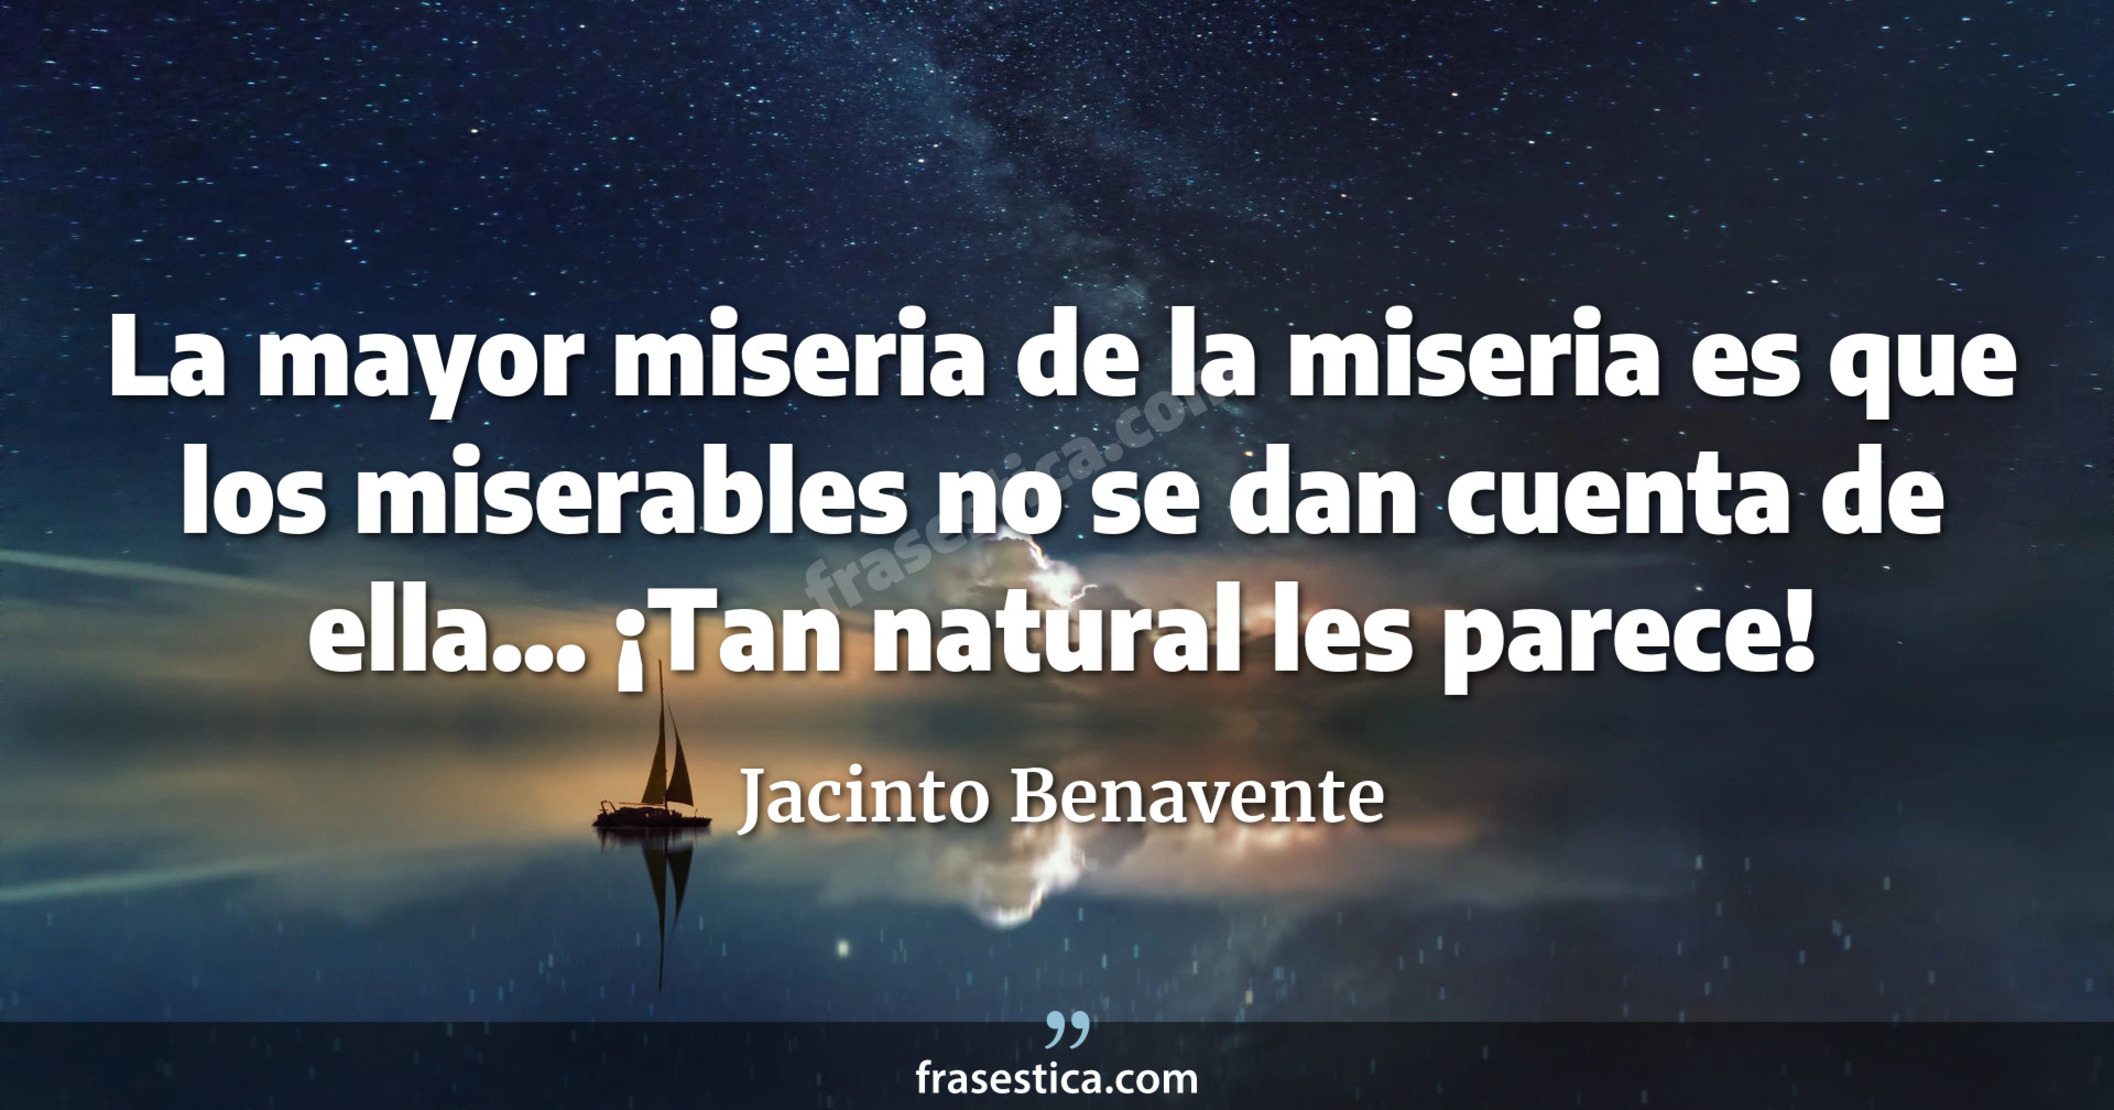 La mayor miseria de la miseria es que los miserables no se dan cuenta de ella... ¡Tan natural les parece! - Jacinto Benavente